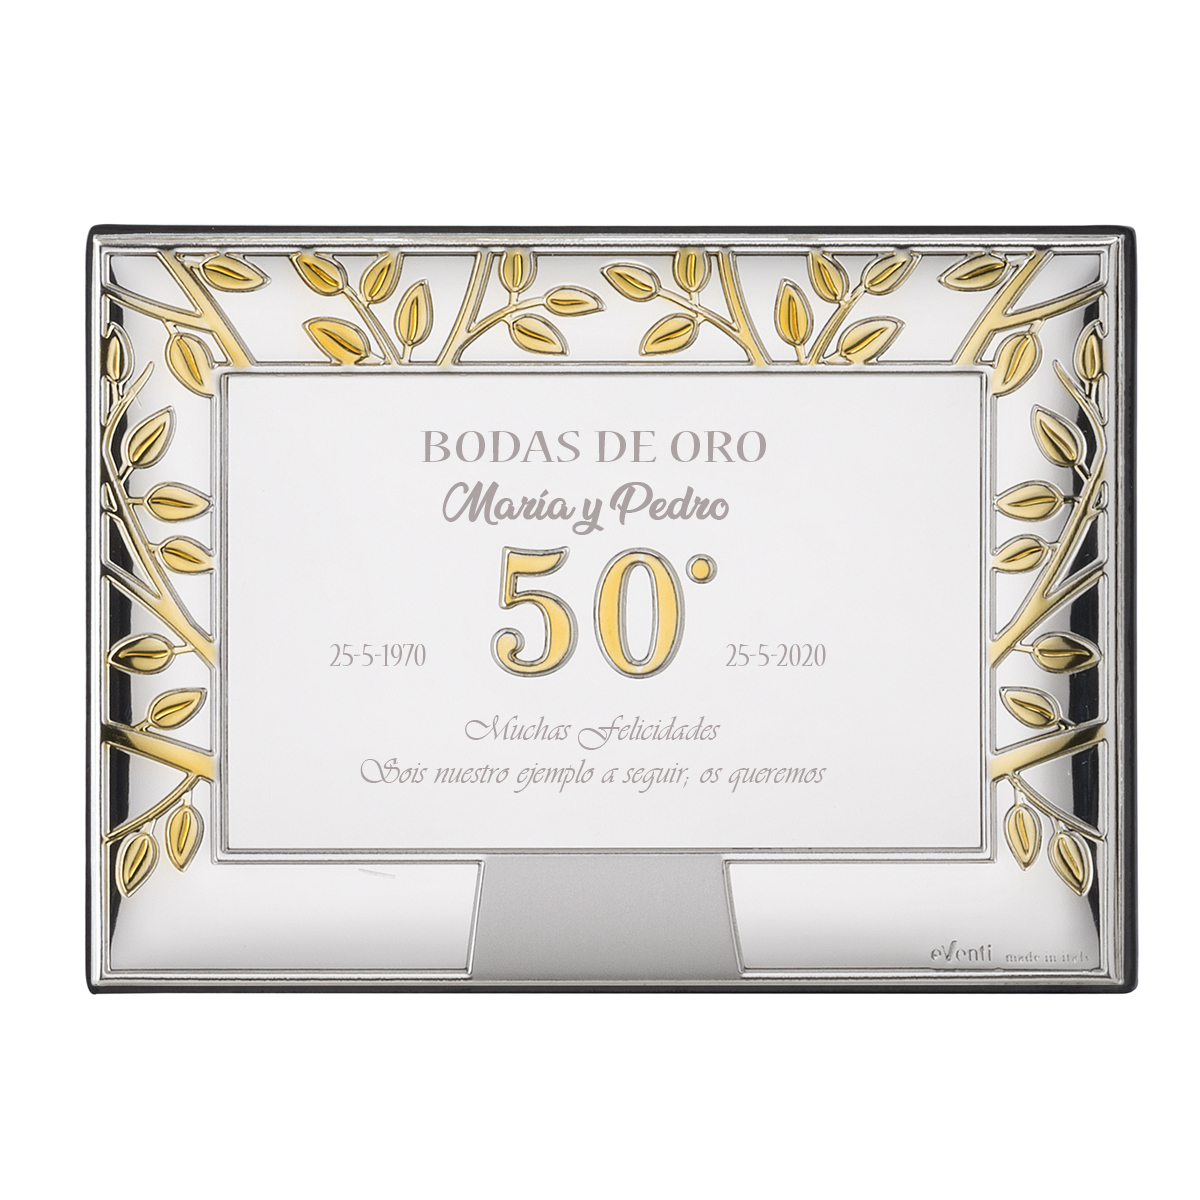 Placas conmemorativas Bodas de Oro (50 Aniversario de Bodas